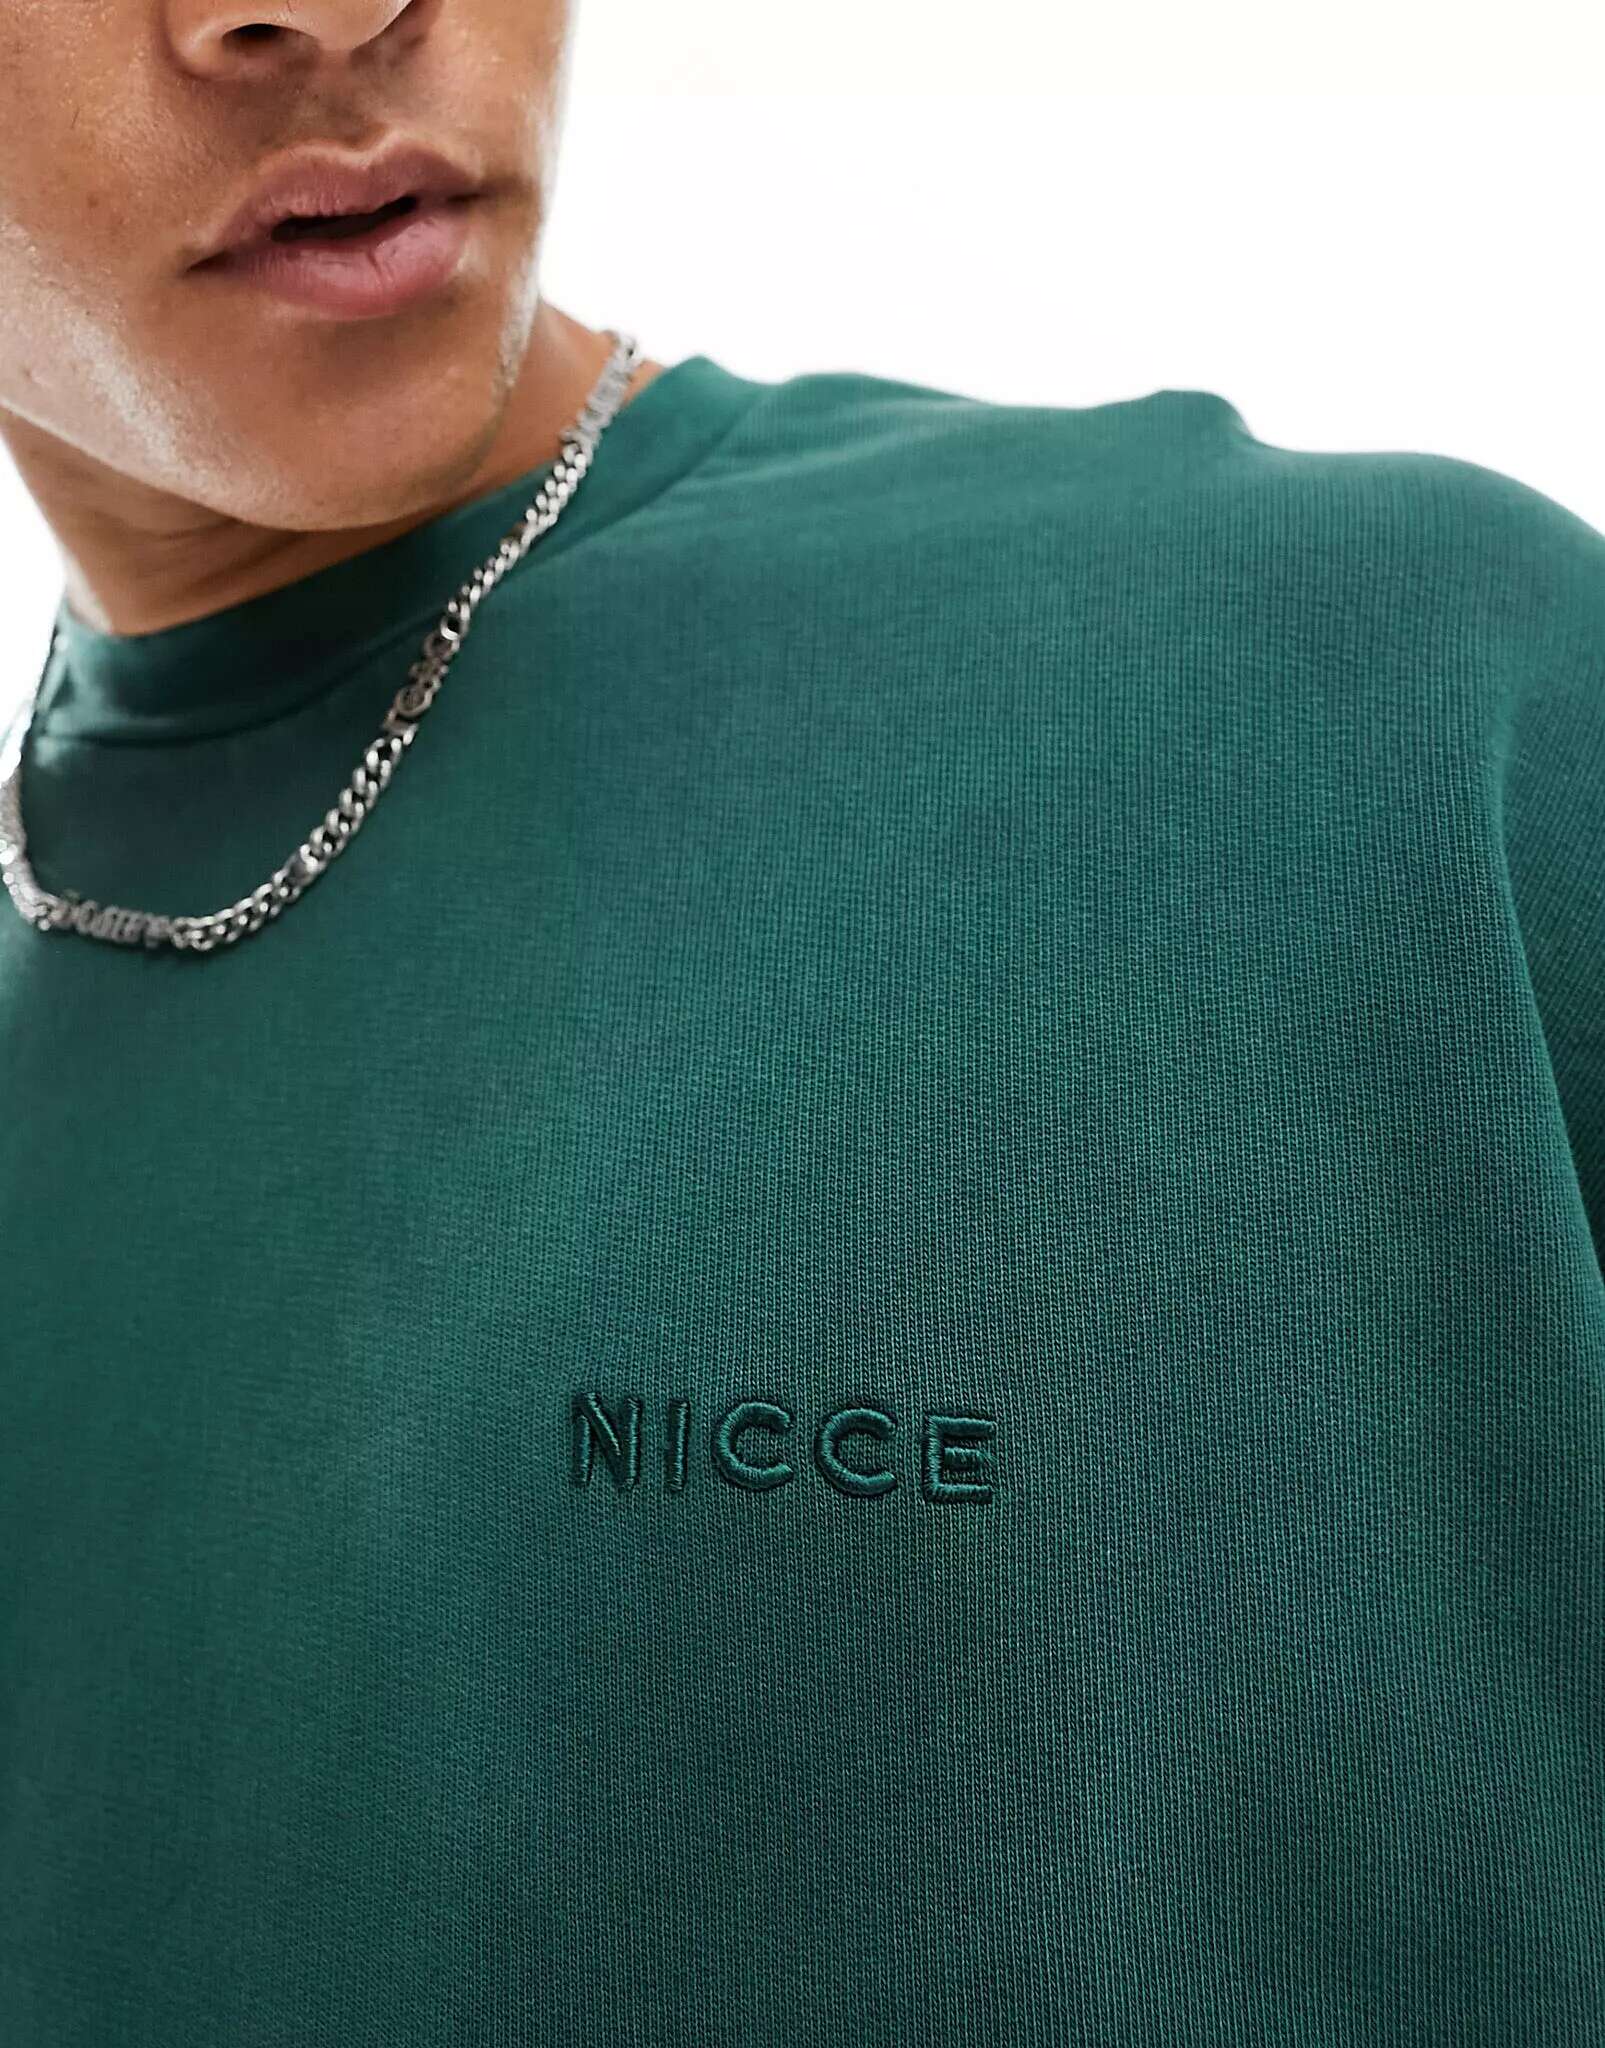 Свитшот оверсайз лесного зеленого цвета с винтажной расцветкой Nicce Mercury